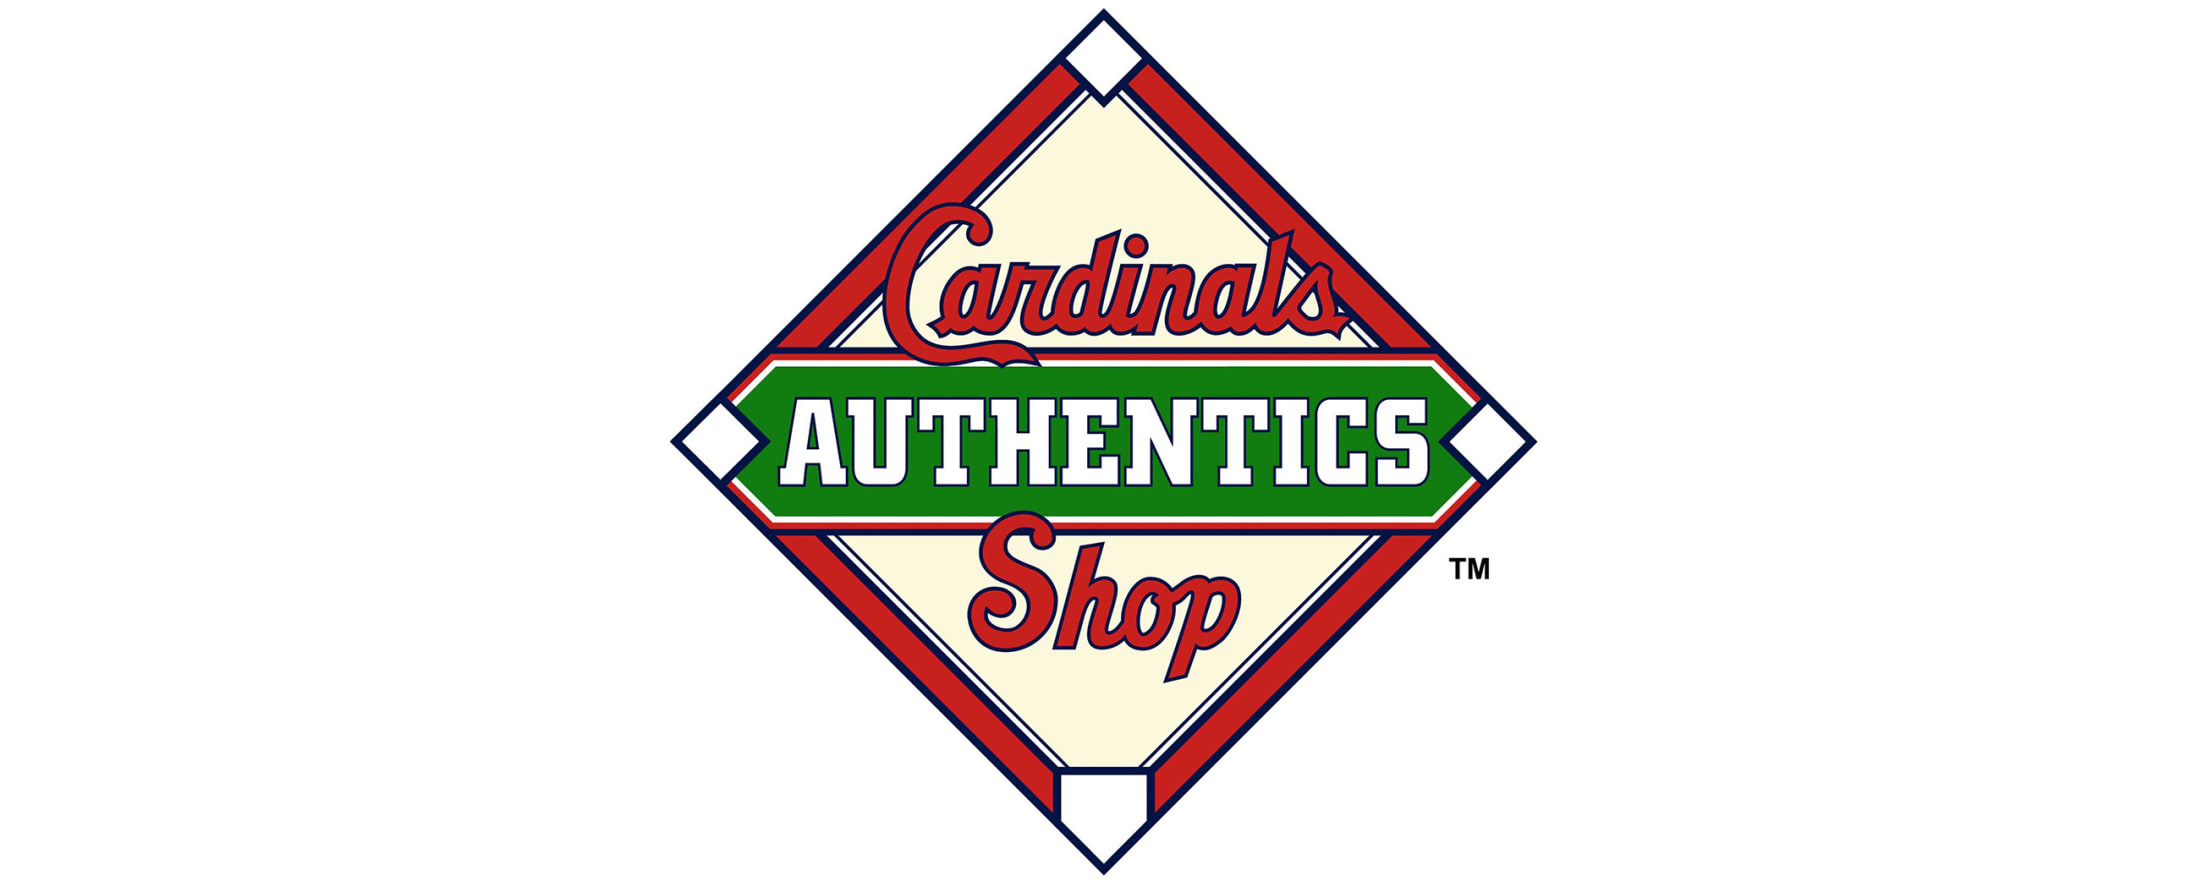 St. Louis Cardinals Fans: “We Want More!”